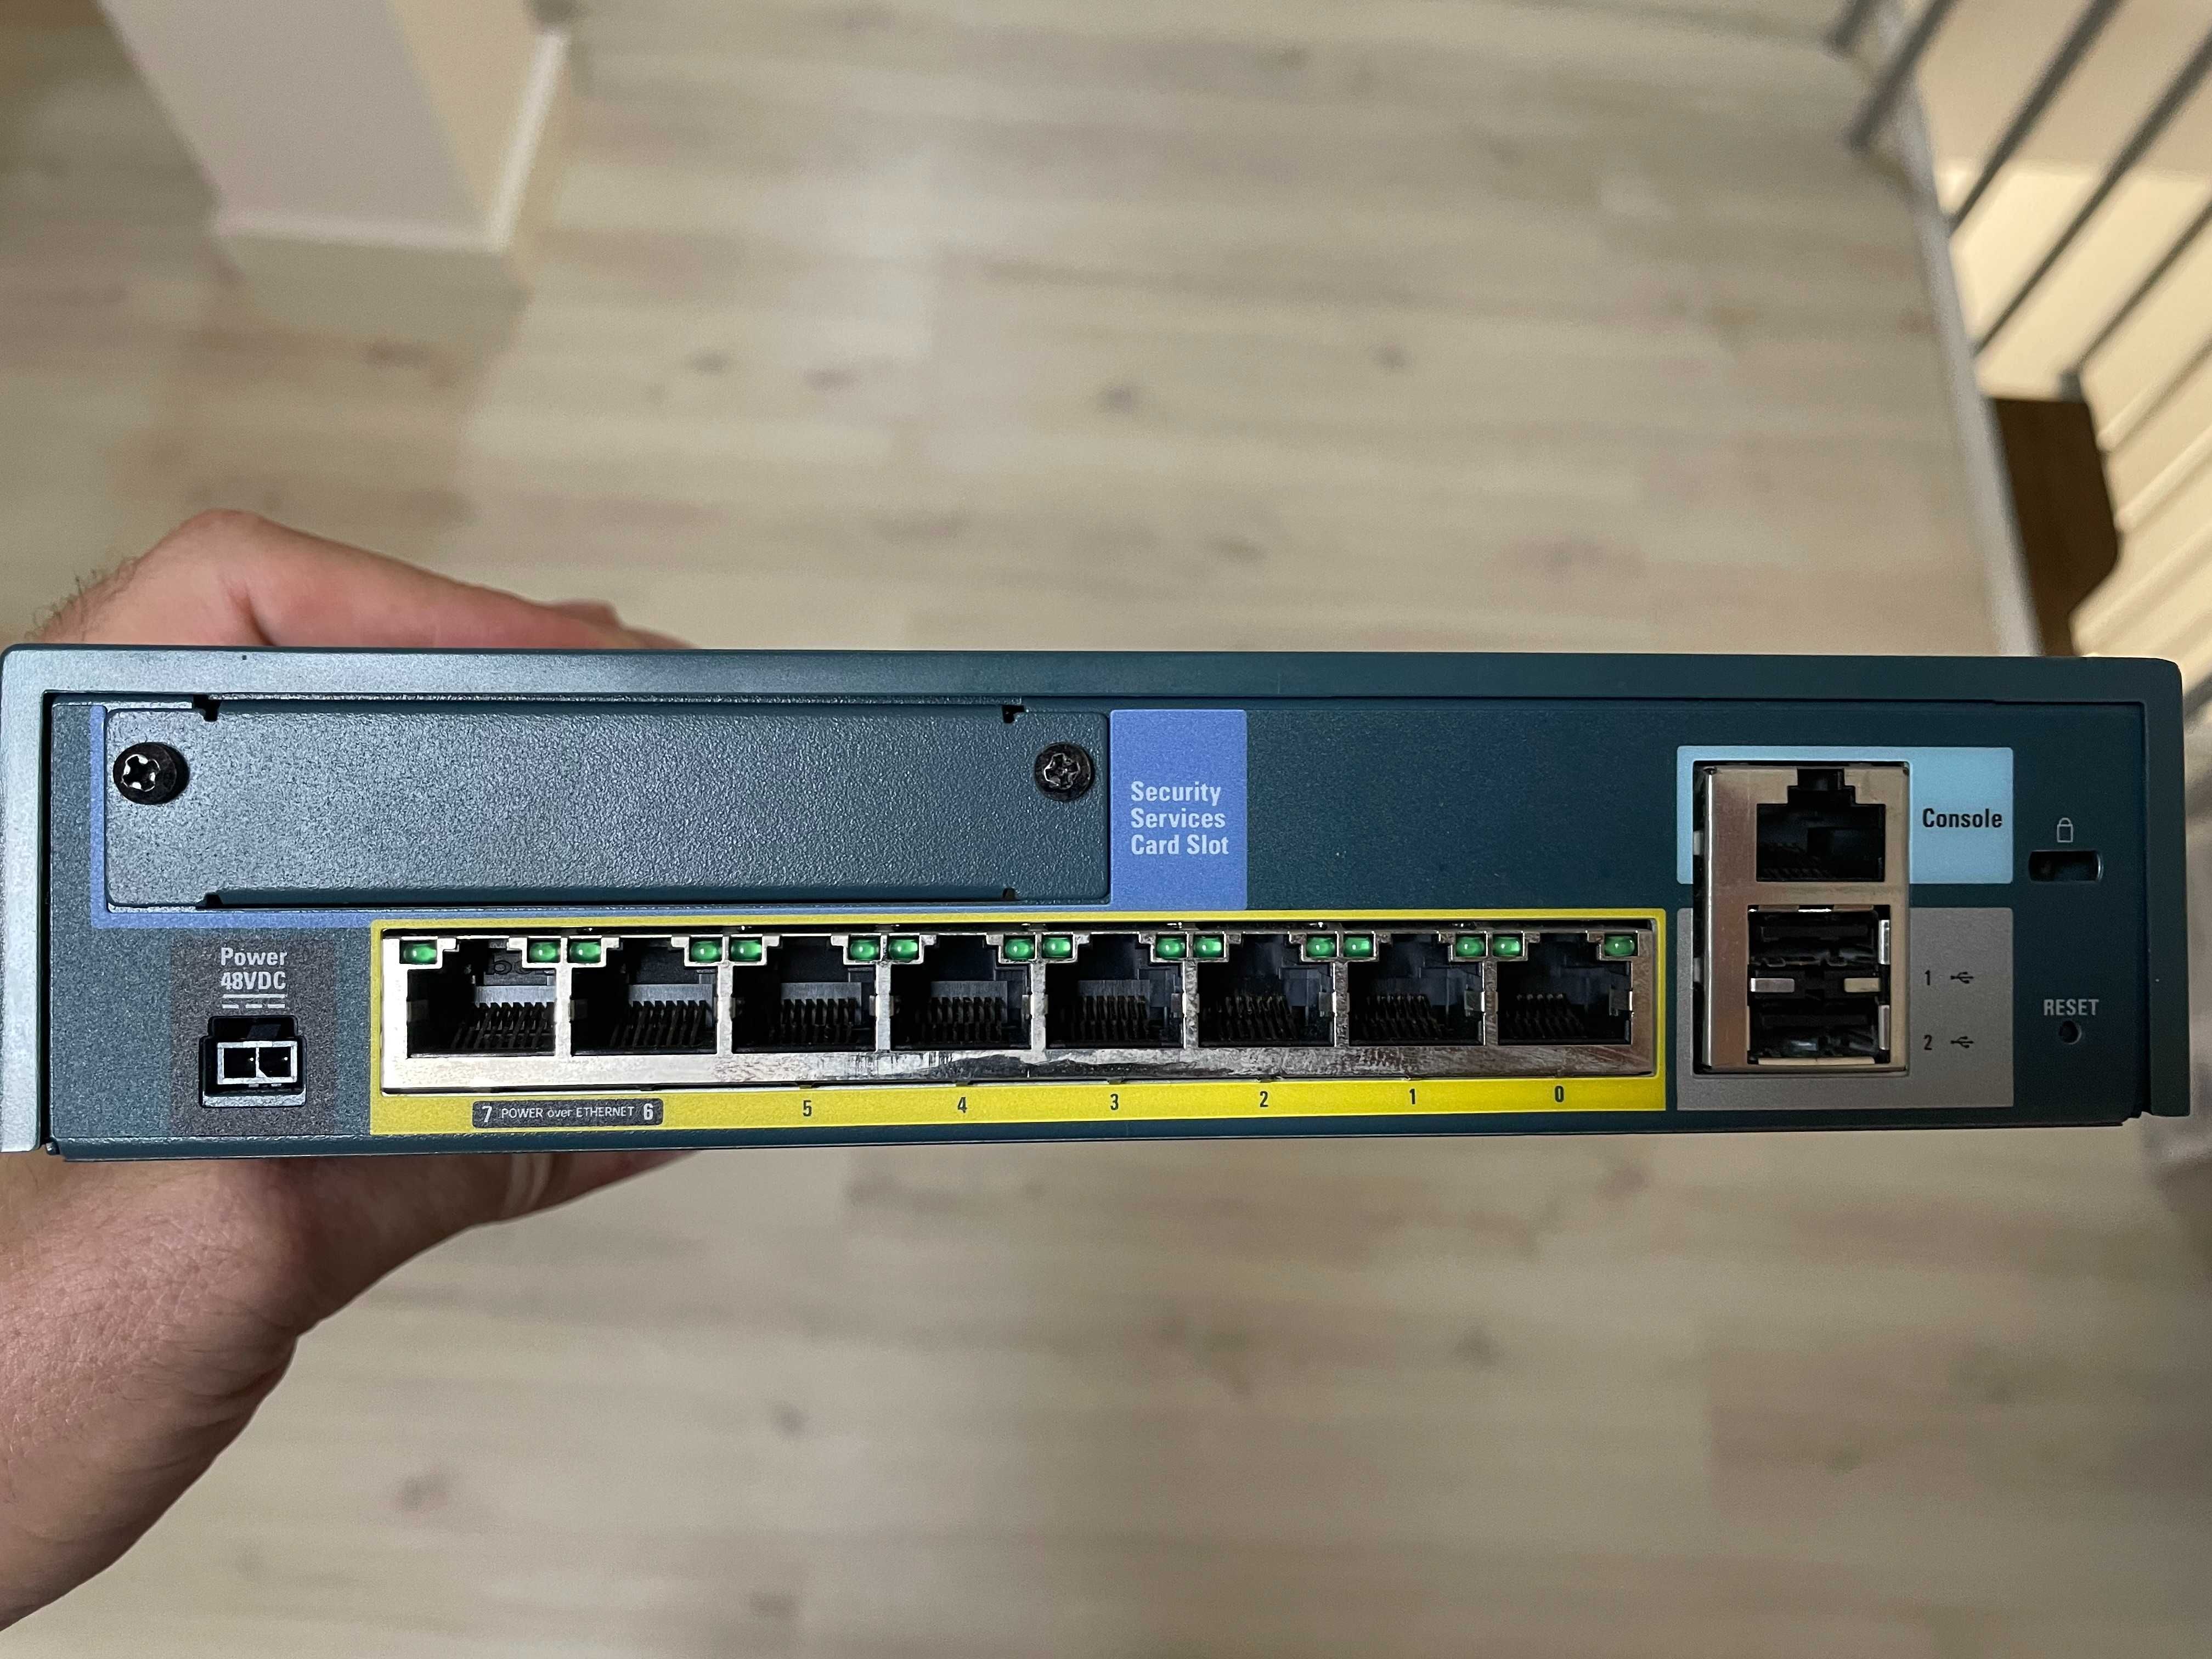 Firewall Cisco ASA 5505 V05